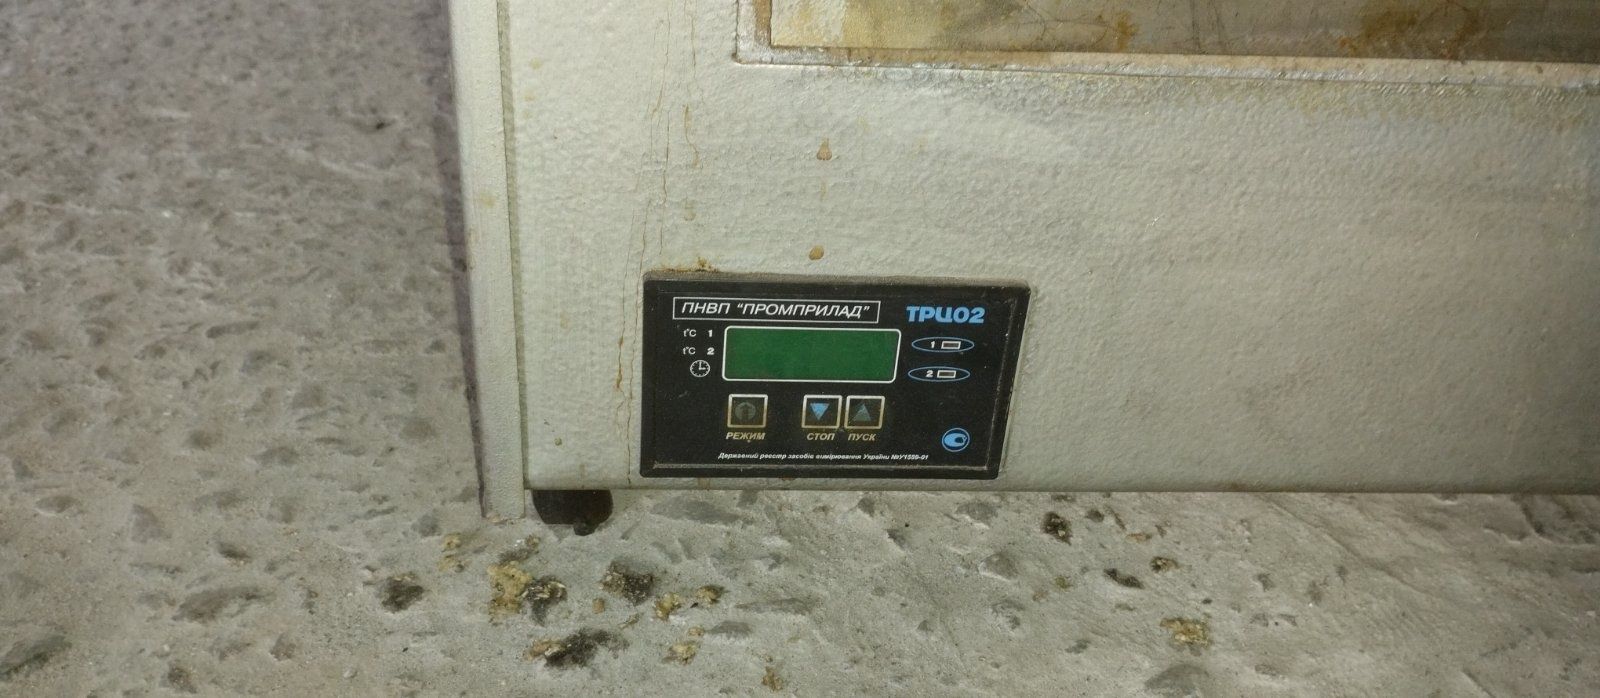 Продам термостат электрический суховоздушный